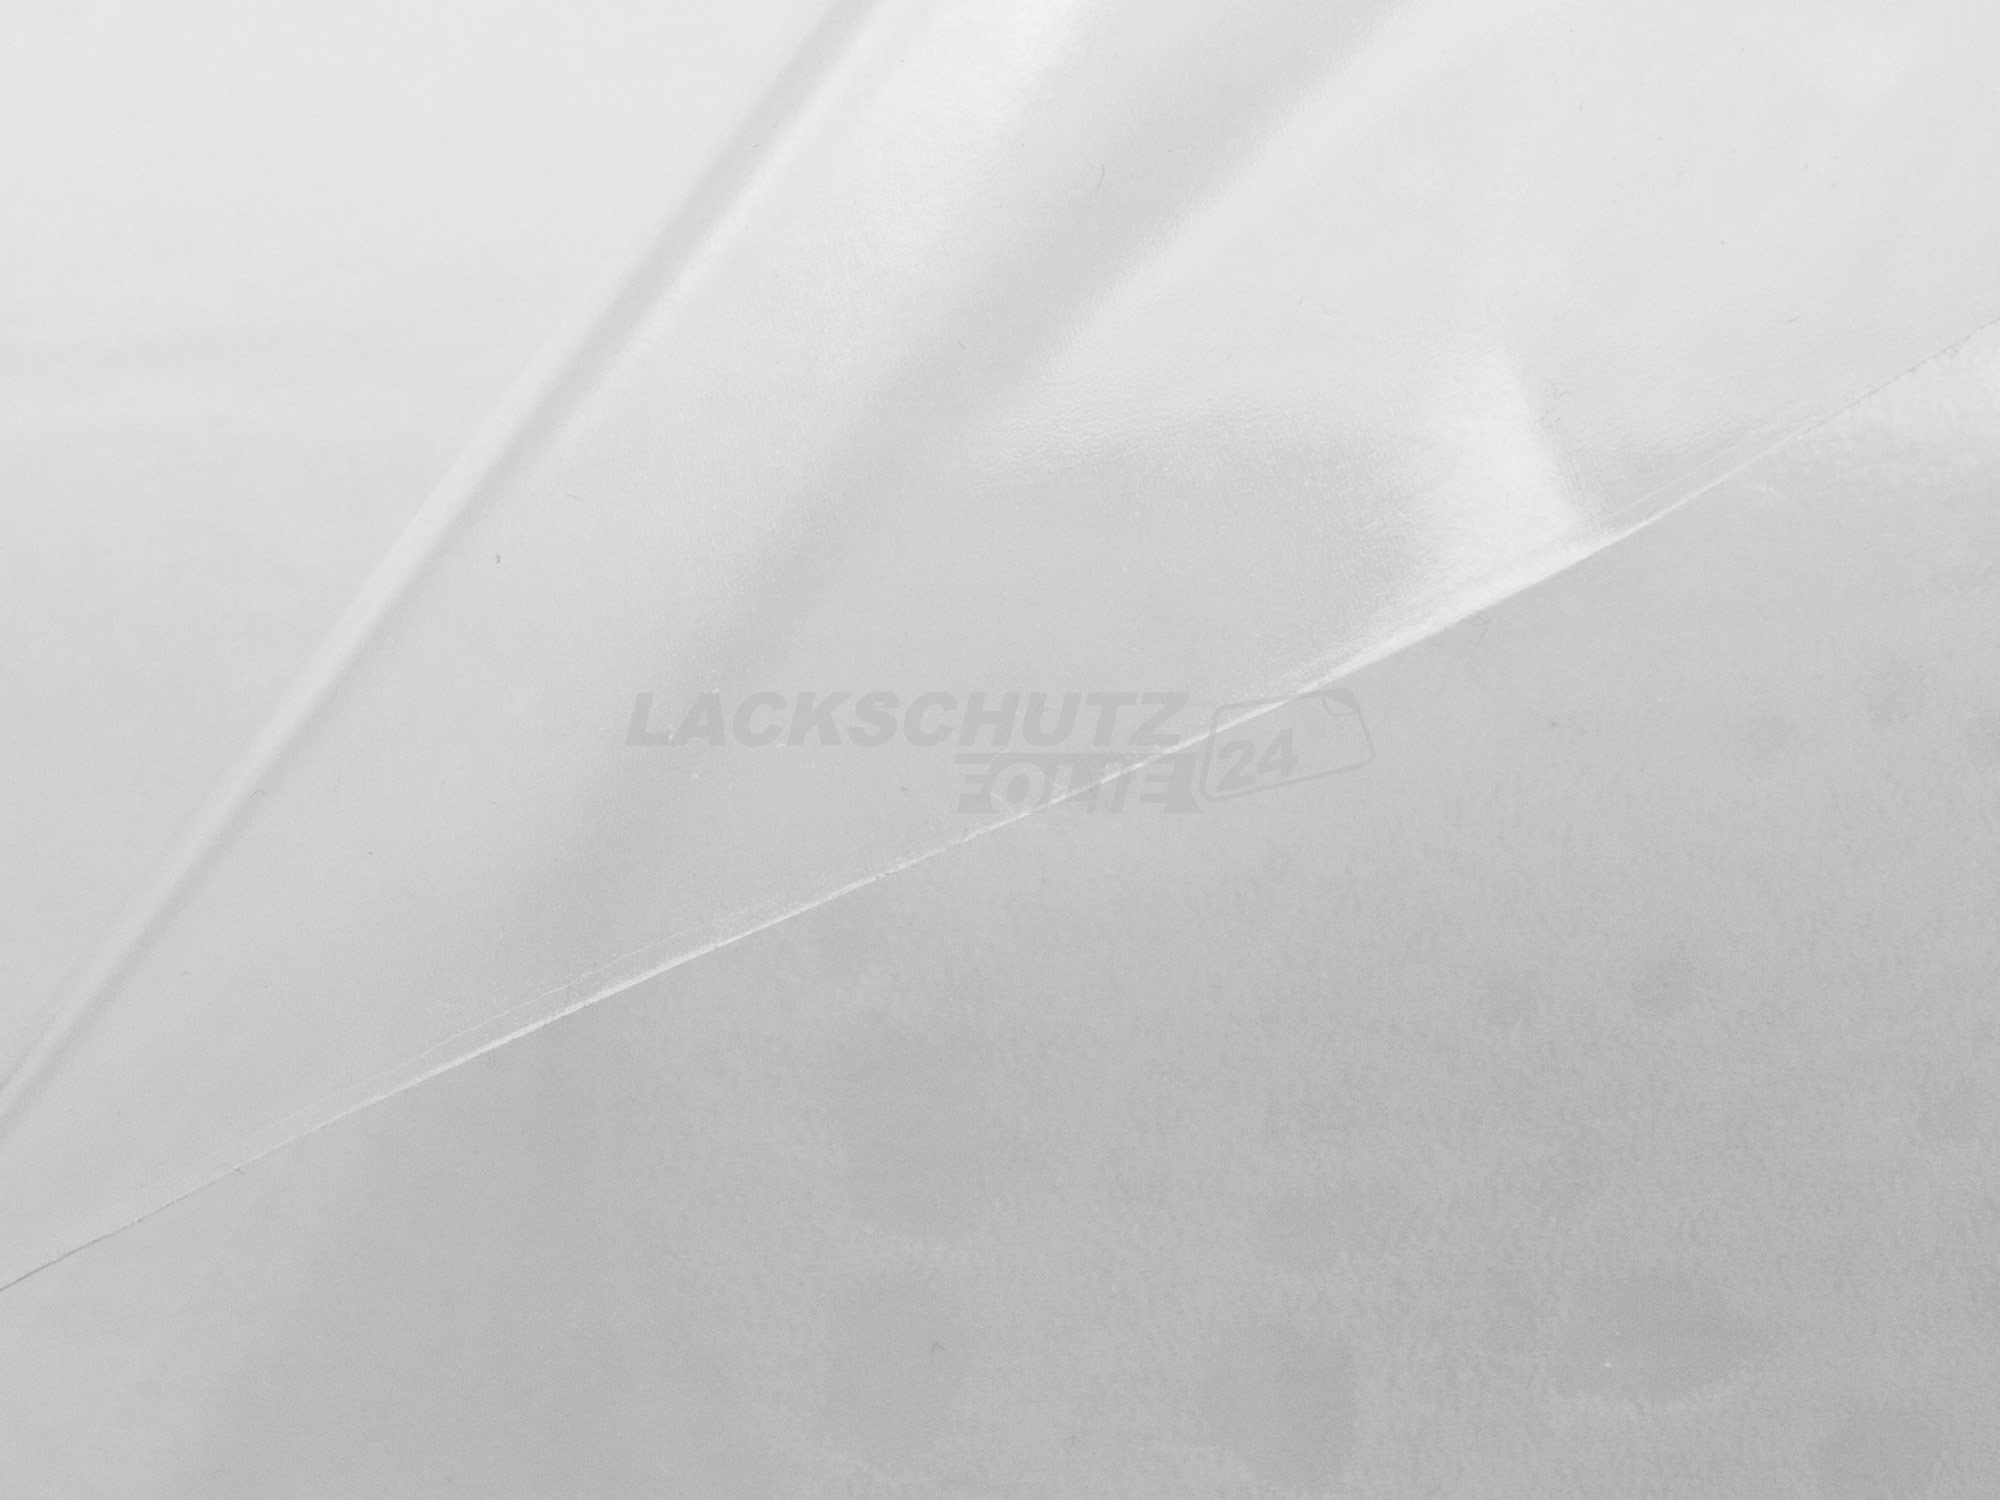 Ladekantenschutzfolie - Transparent Glatt Hochglänzend für VW / Volkswagen Passat Limousine B5, Typ 3BG, Facelift, BJ 2000-2005